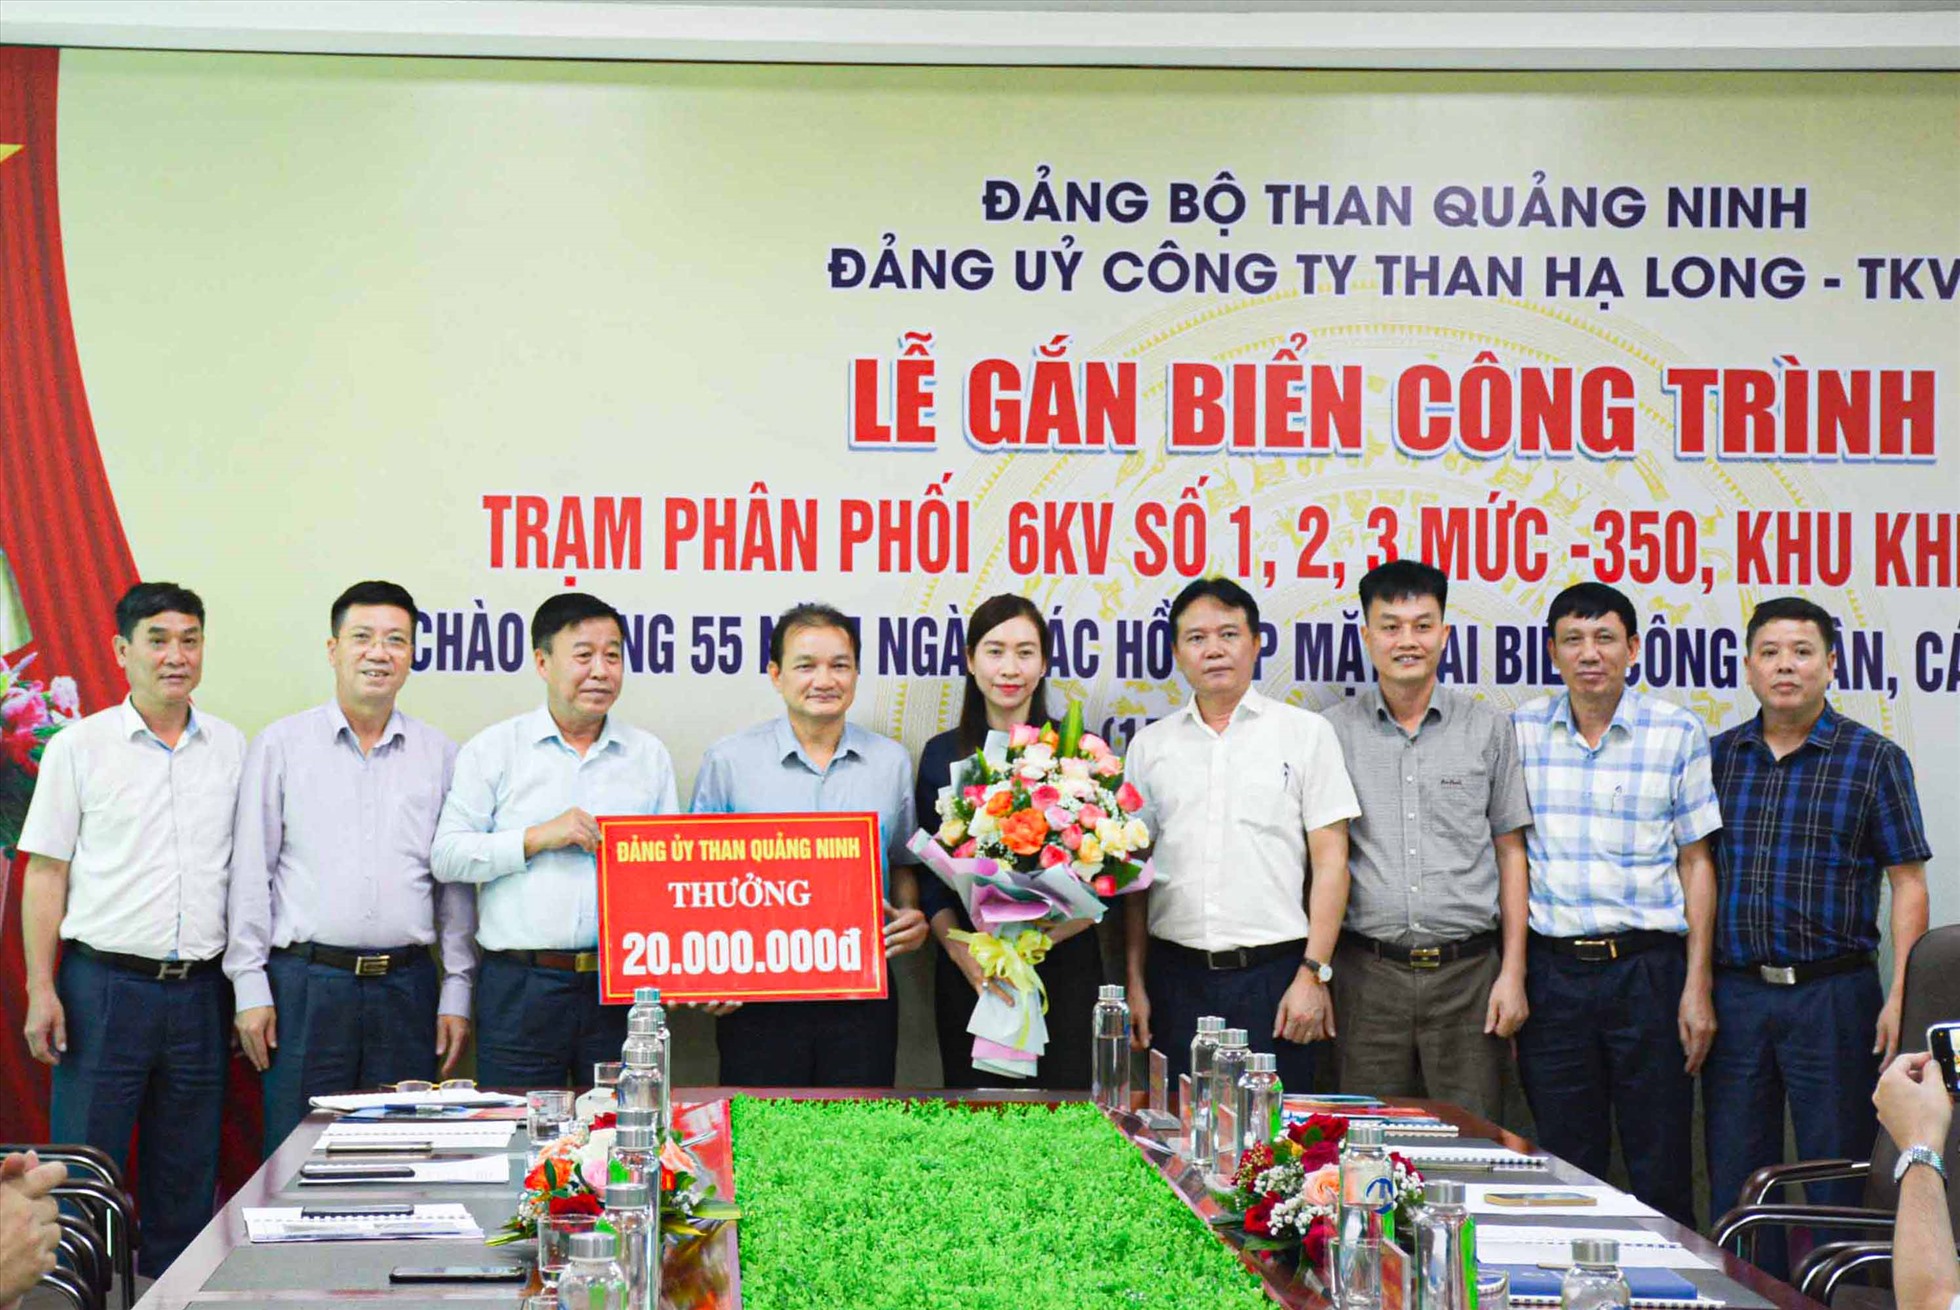 Lãnh đạo Đảng uỷ Than Quảng Ninh trao thưởng chúc mừng Công ty Than Hạ Long hoàn thành xuất sắc công trình Trạm phân phối 6KV số 1, 2, 3. Ảnh: Công ty Than Hạ Long.